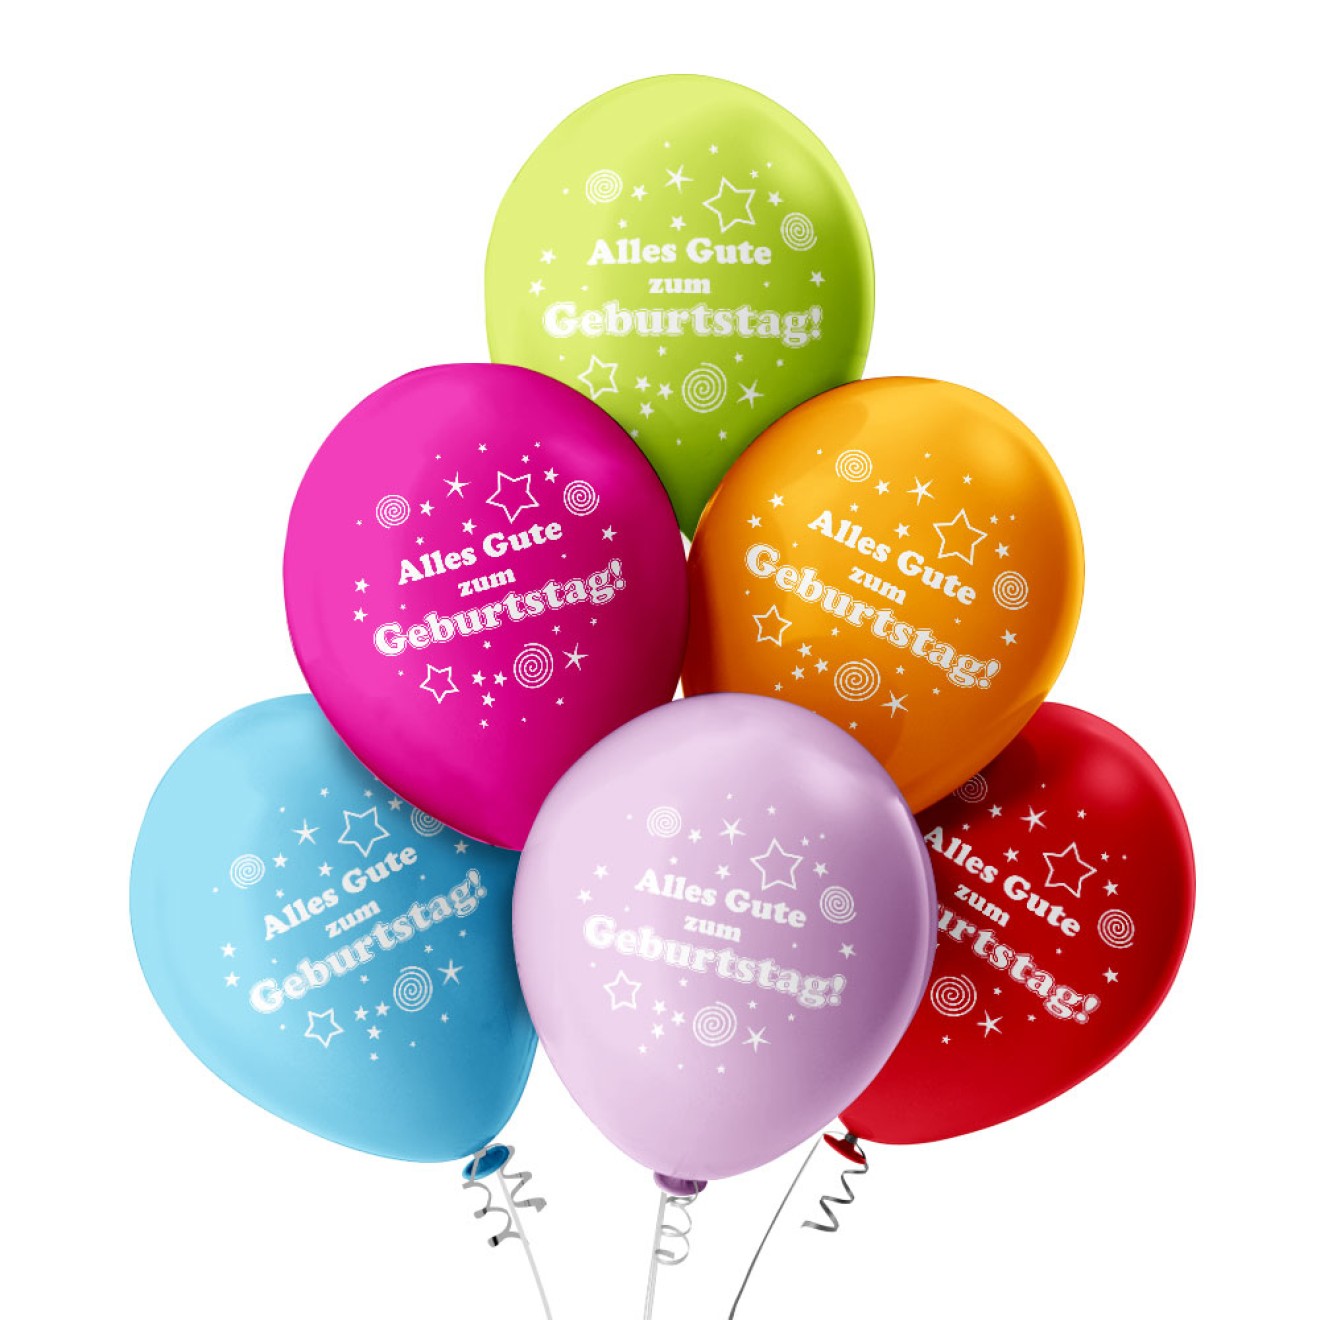 Luftballons Geburtstag: Alles Gute zum Geburtstag!